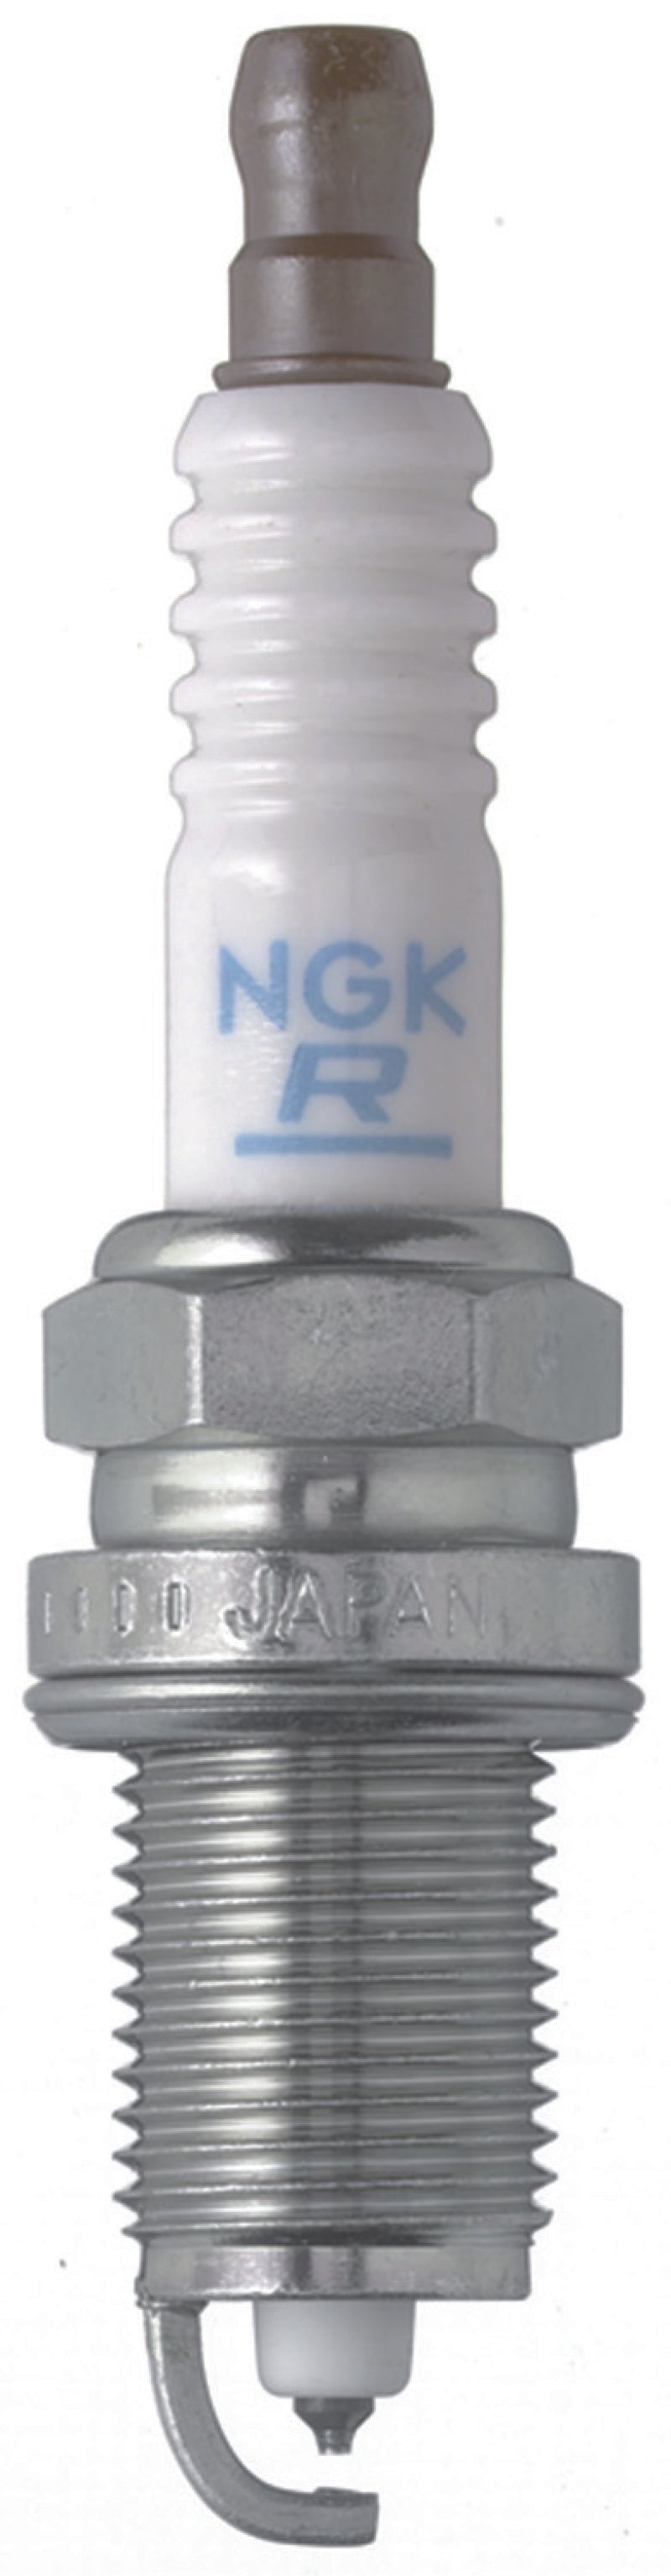 NGK Laser Platinum Spark Plug Box of 4 (PZFR6F)